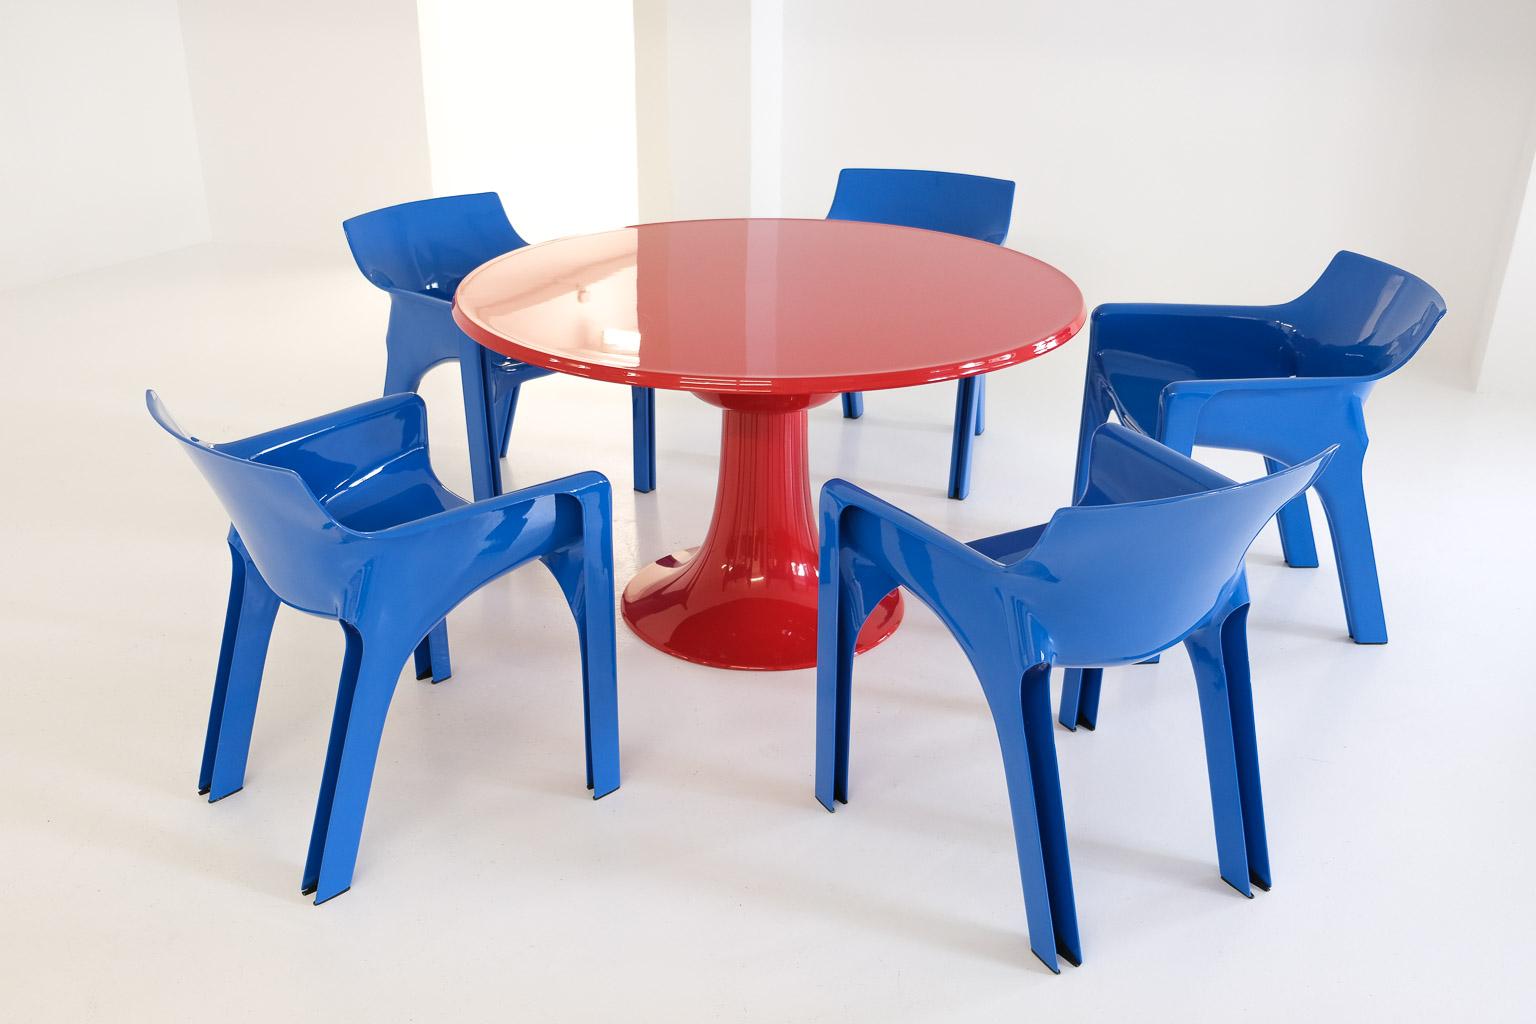 une célèbre table à colonnes de Zapf, une des premières versions avec un bord incliné (probablement 1967, plus tard les tables ont été fabriquées avec des bords ronds). repeinte dans un rouge classique.

otto zapf a récemment été honoré en tant que